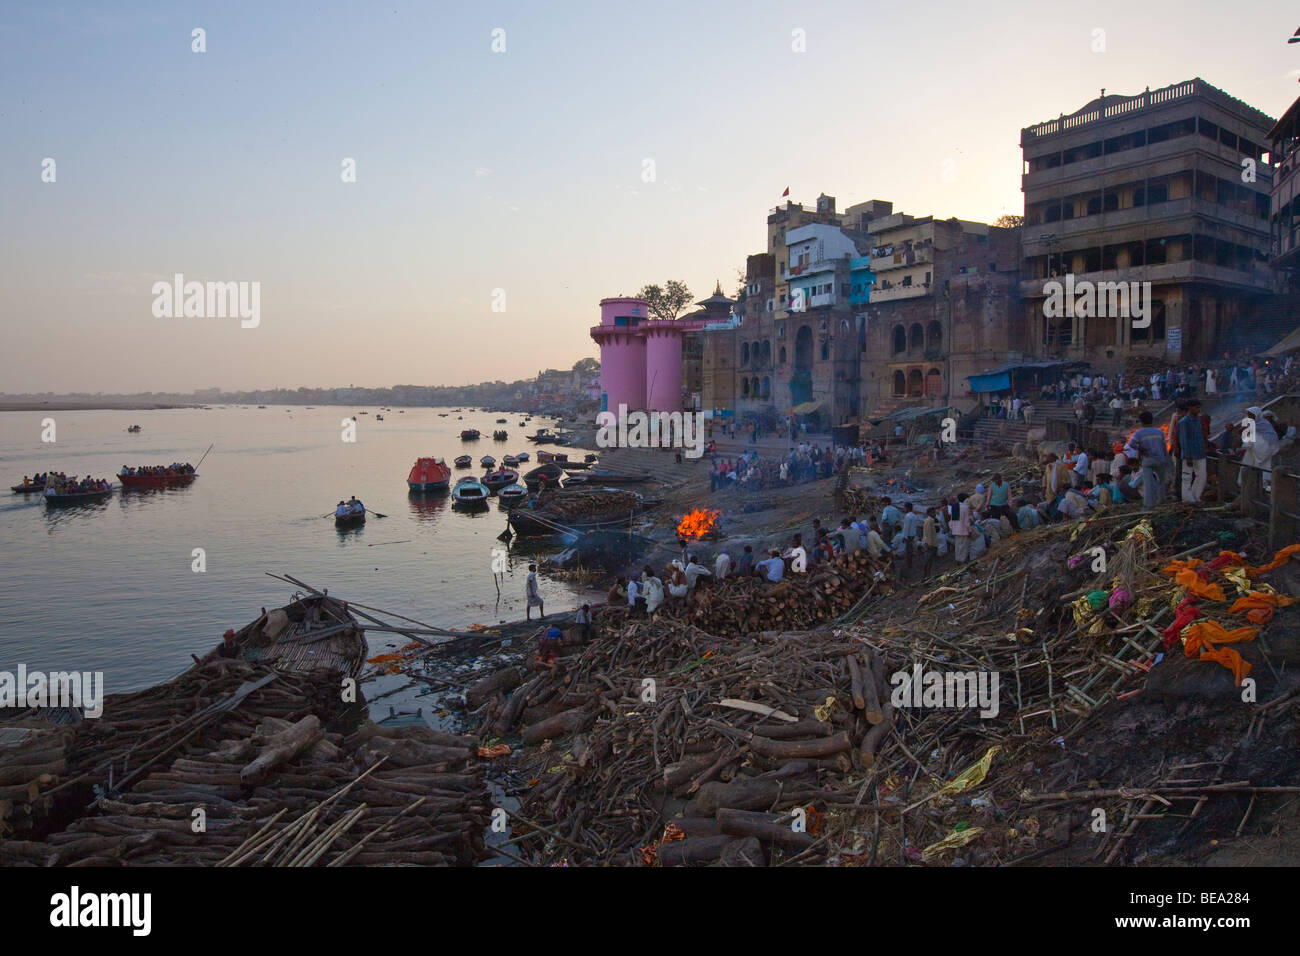 Burning Ghat in Varanasi India Stock Photo